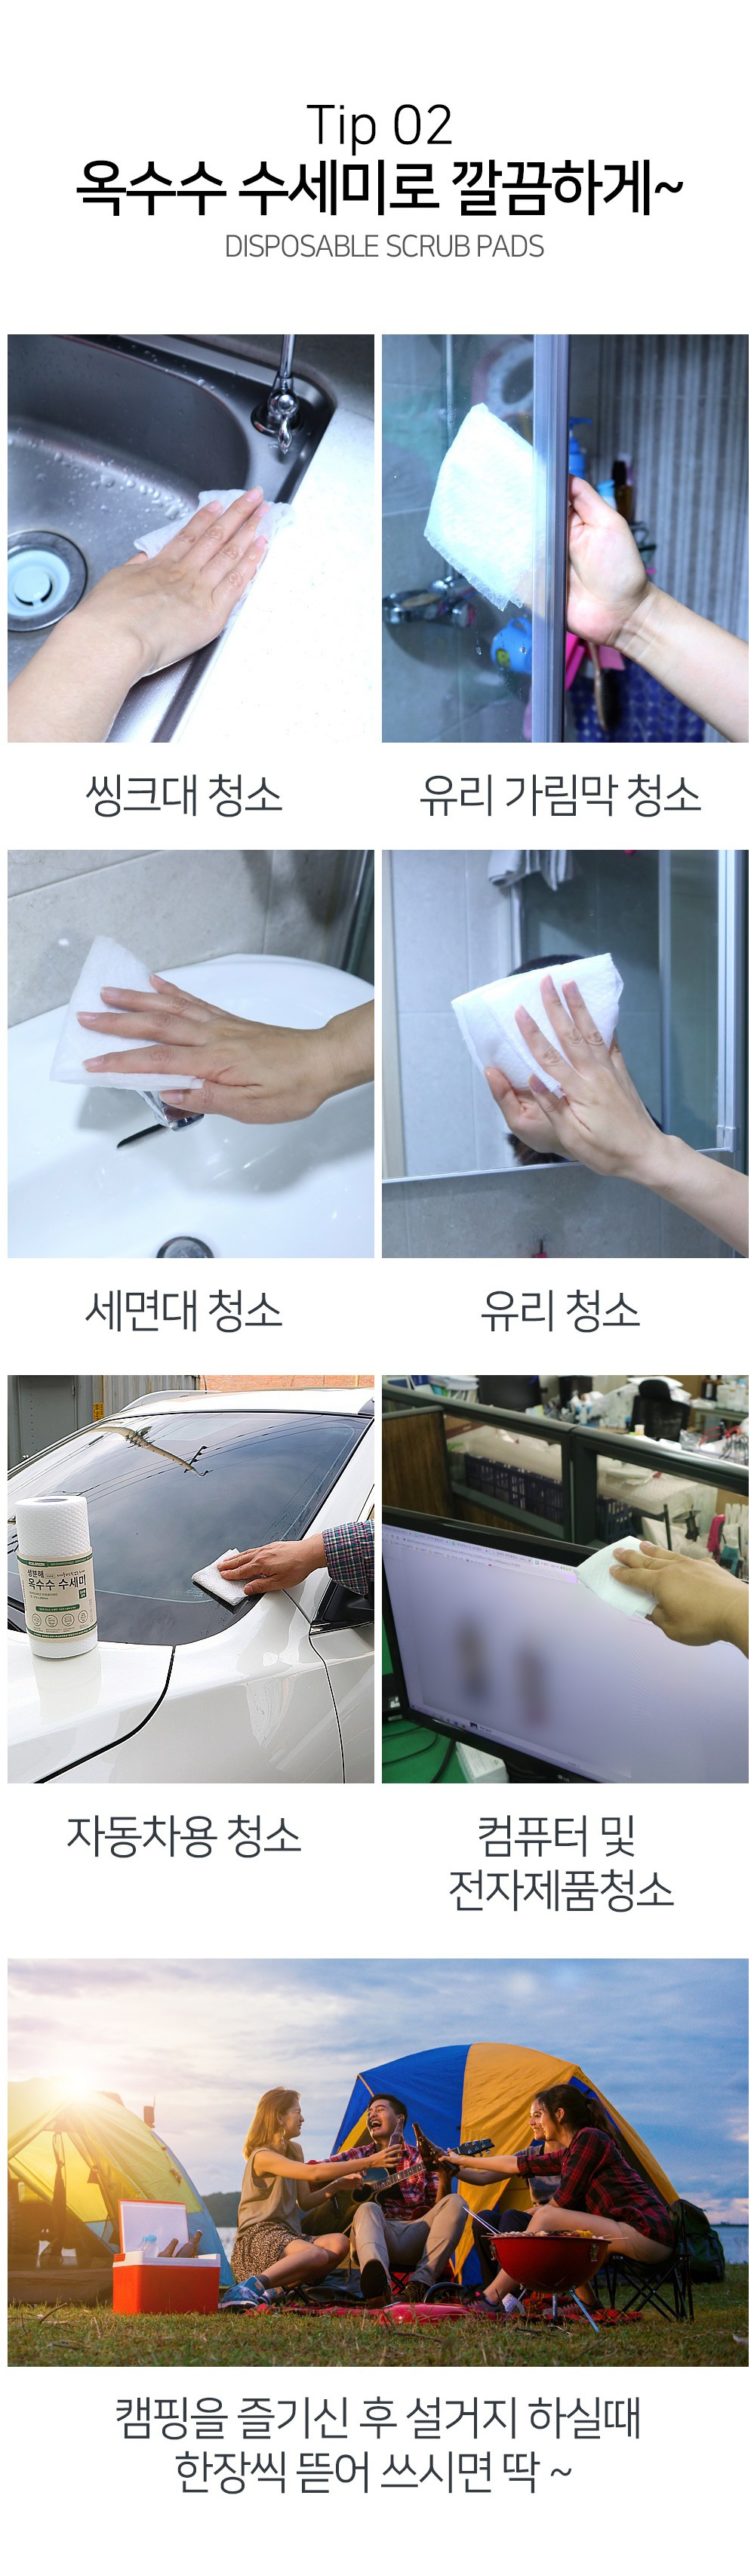 韓國食品-[Ecolgreen] Disposable Scrub Pads 50pcs